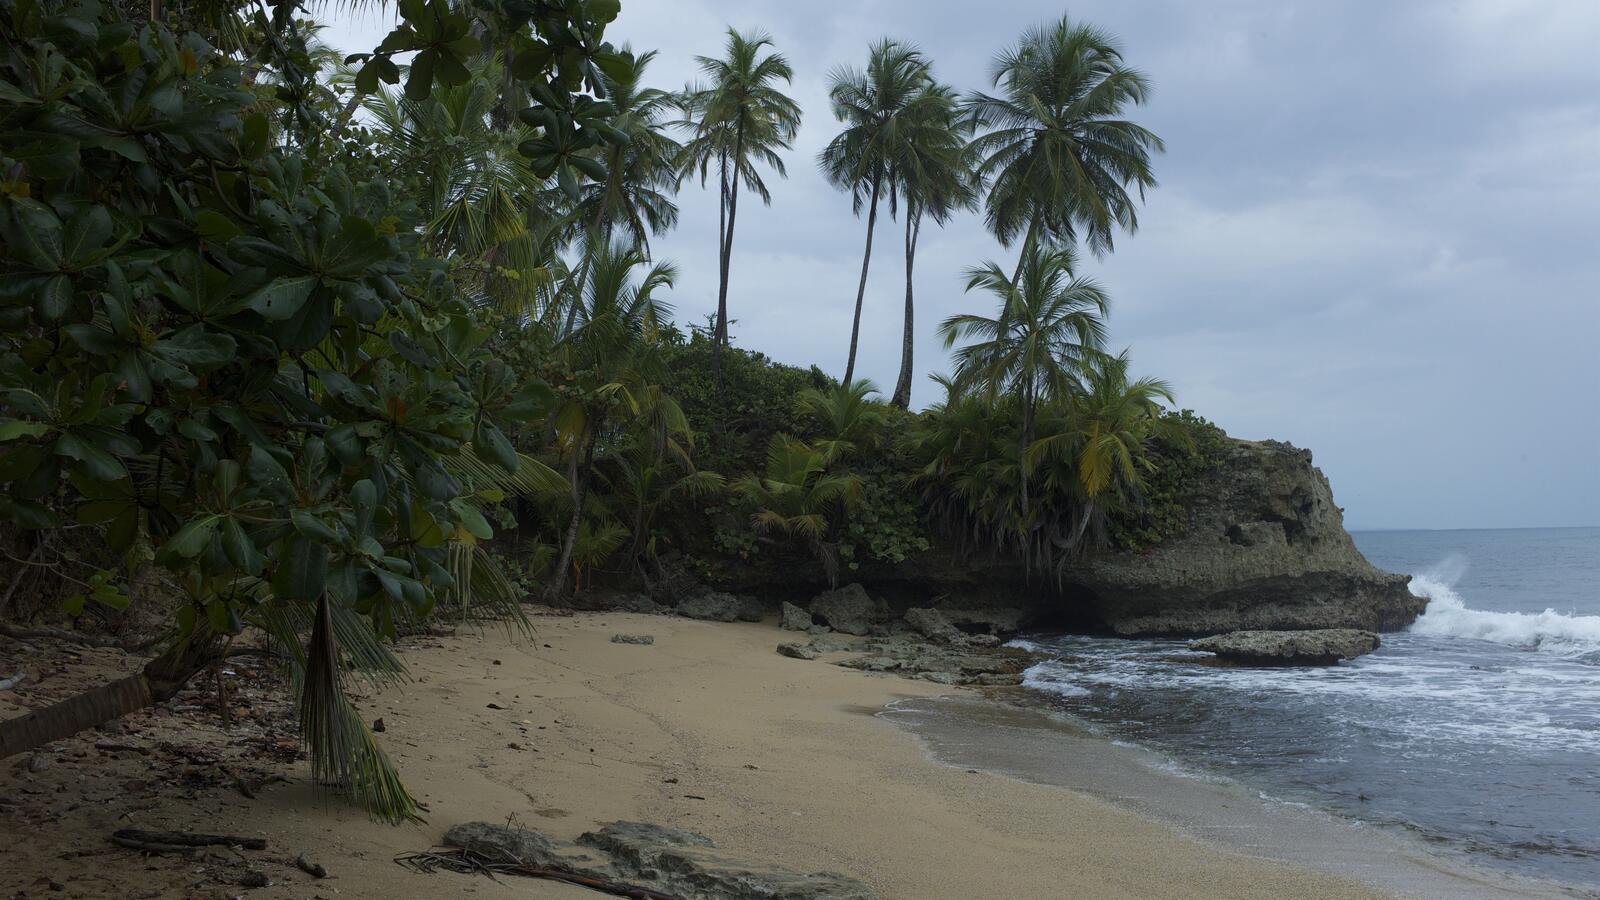 Бесплатное фото Пасмурный день на пляже с пальмами